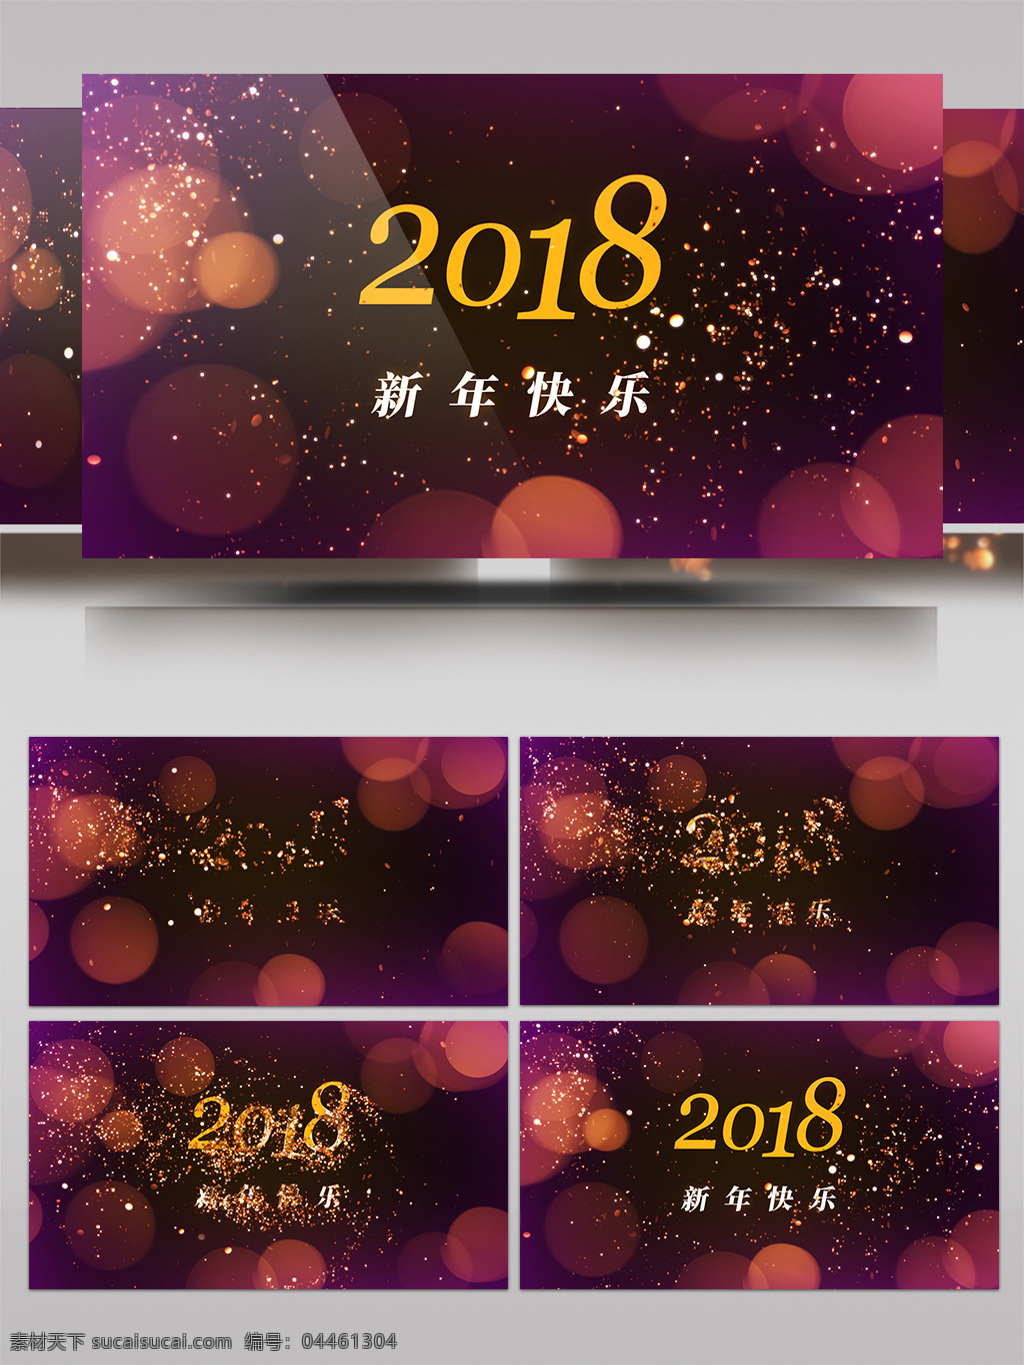 闪光 粒子 2018 新年 快乐 ae 模板 新年快乐 ae模板